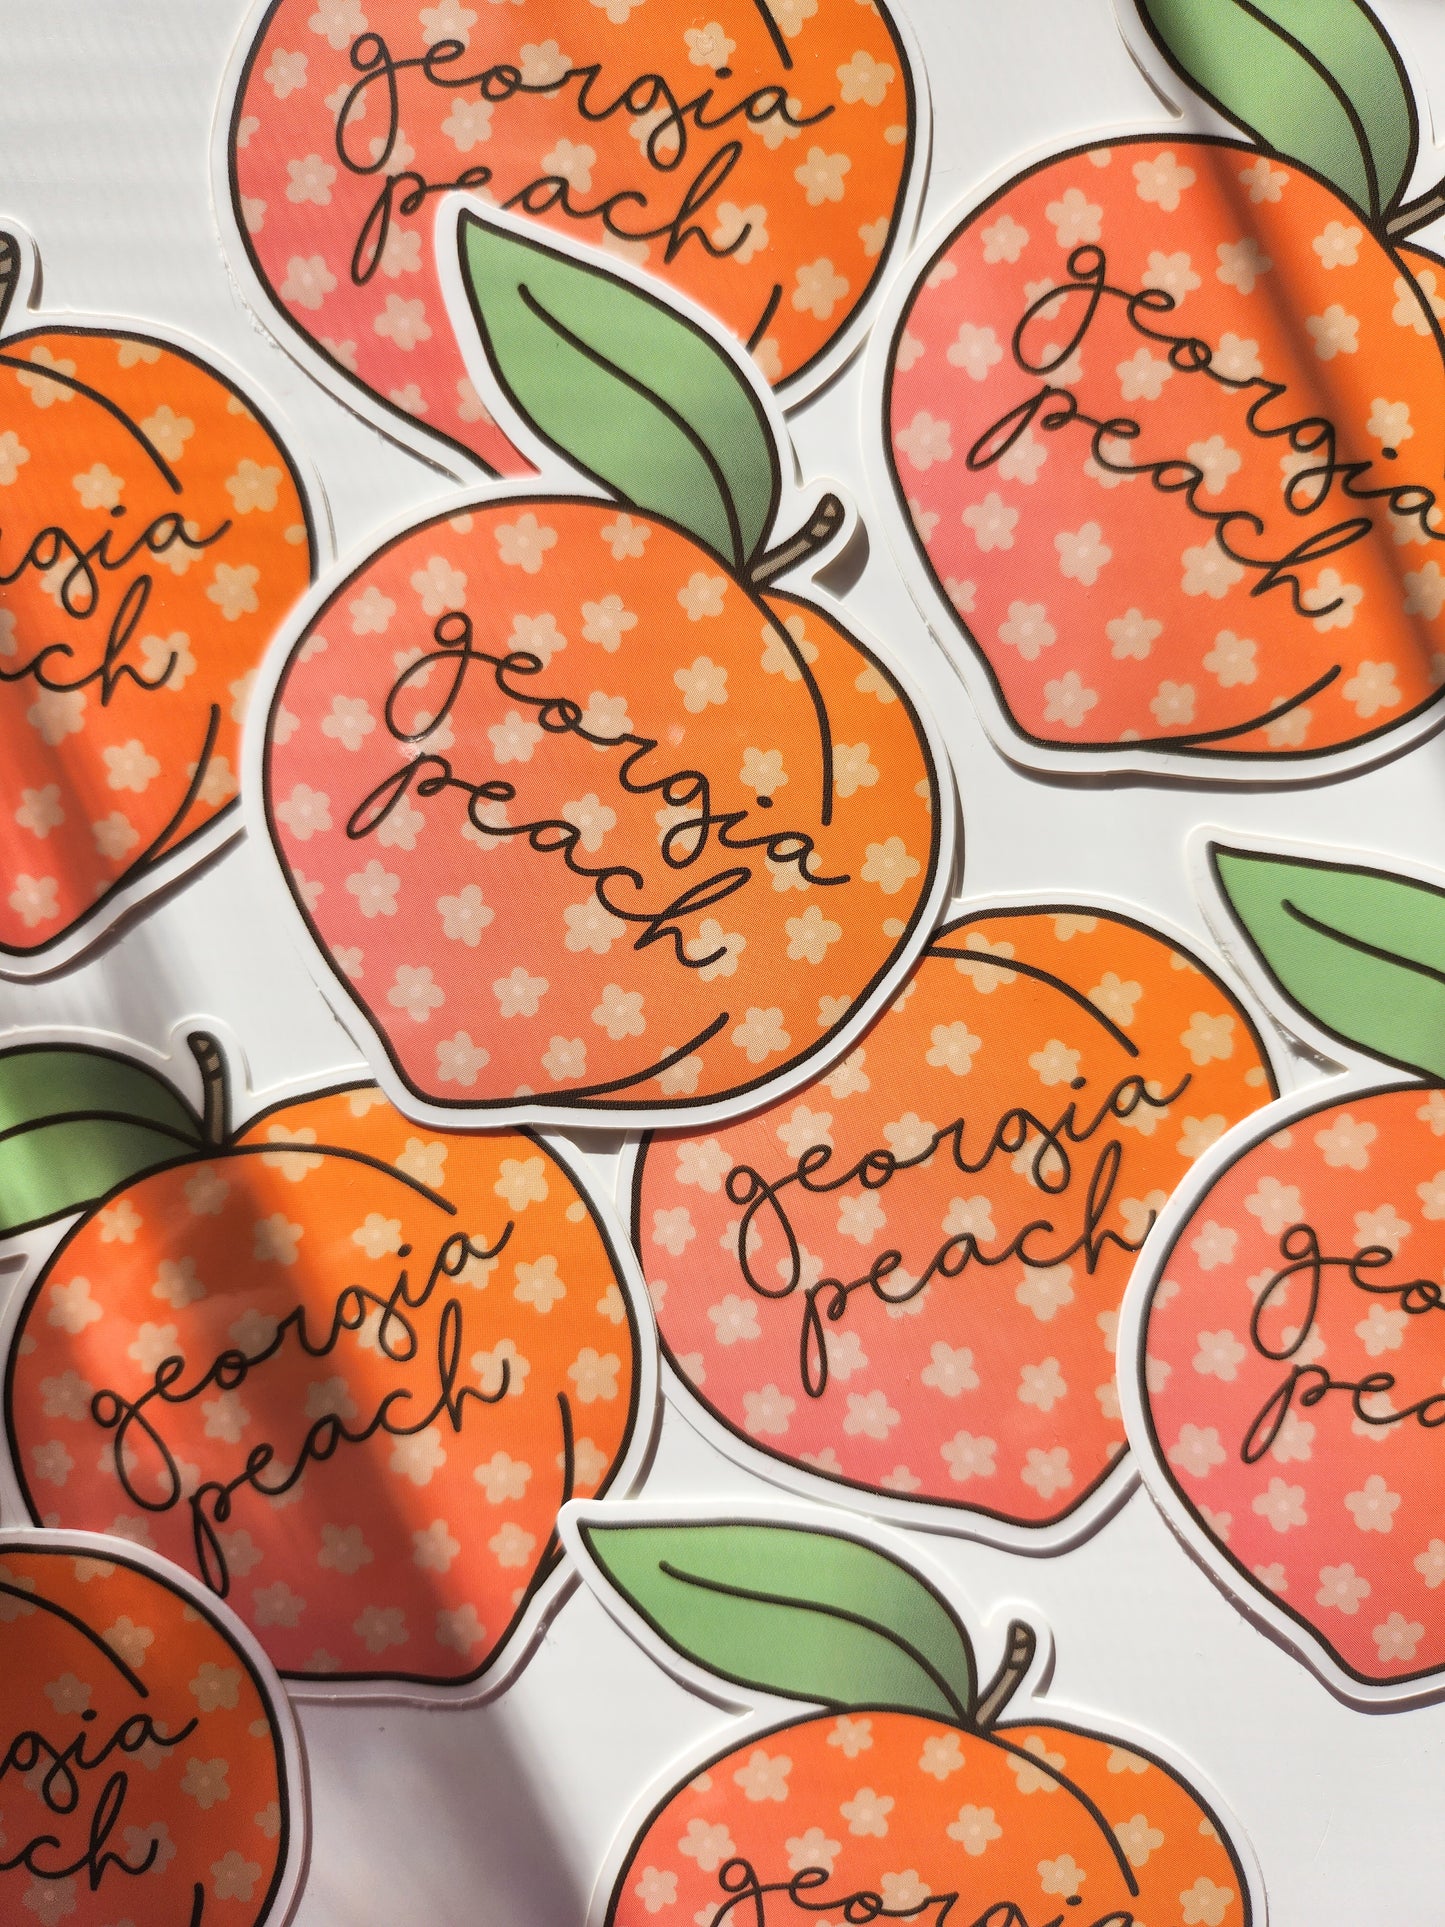 Georgia Peach Sticker in Orange, Vinyl, 2.5 x 2.5in